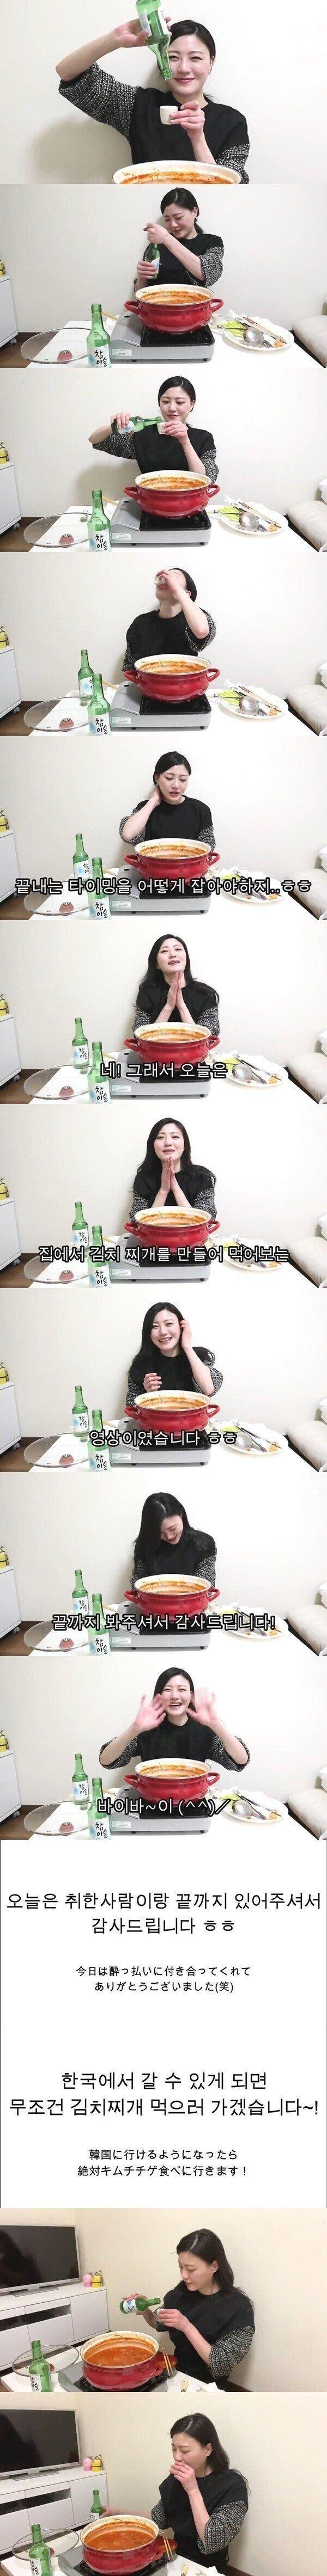 김치찌개랑 소주먹는 일본여자